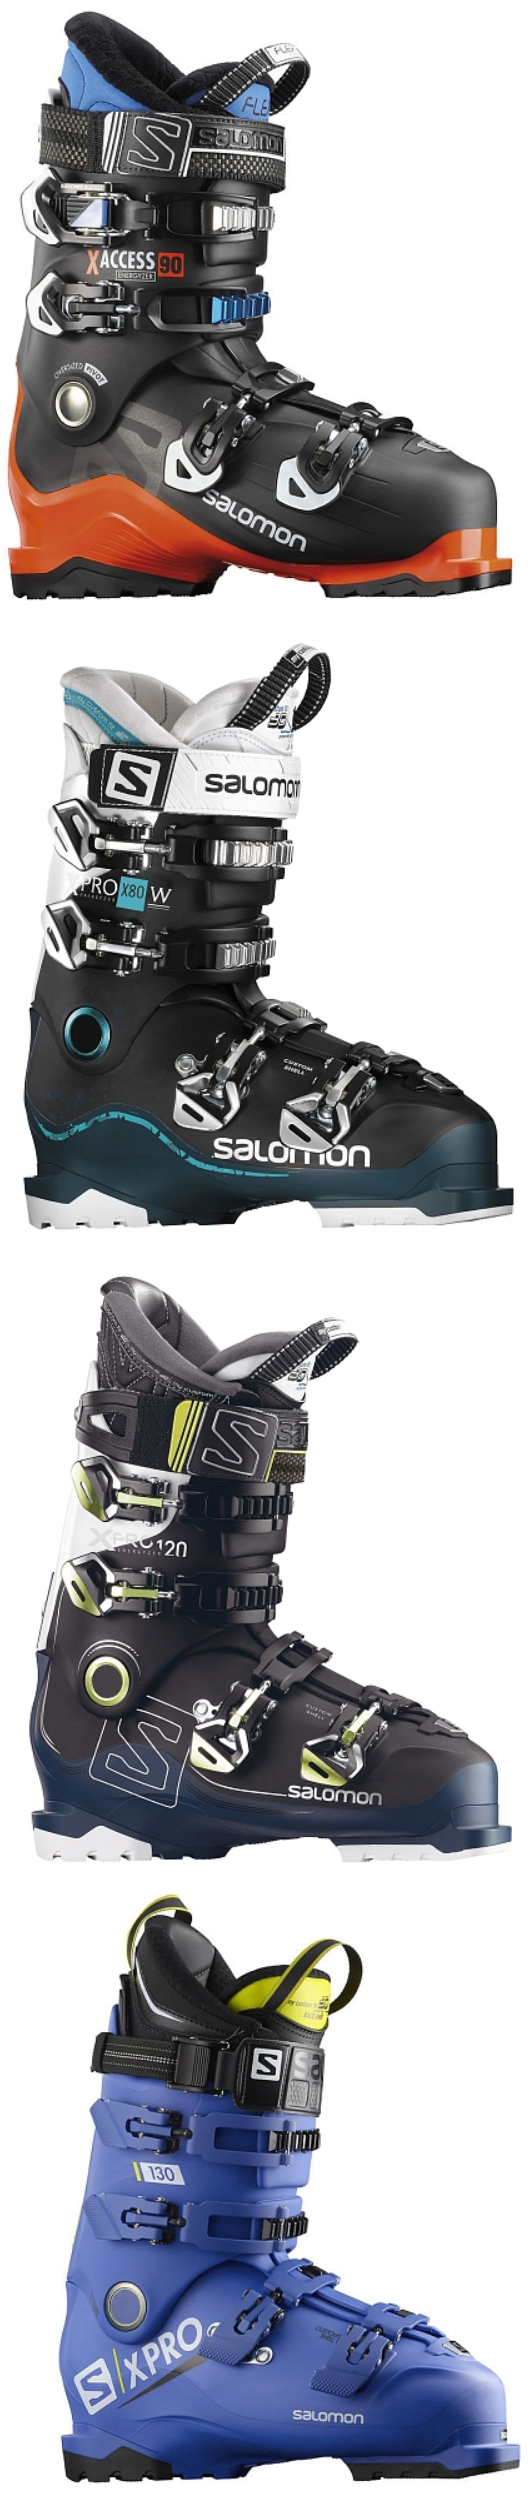 salomon buty narciarskie